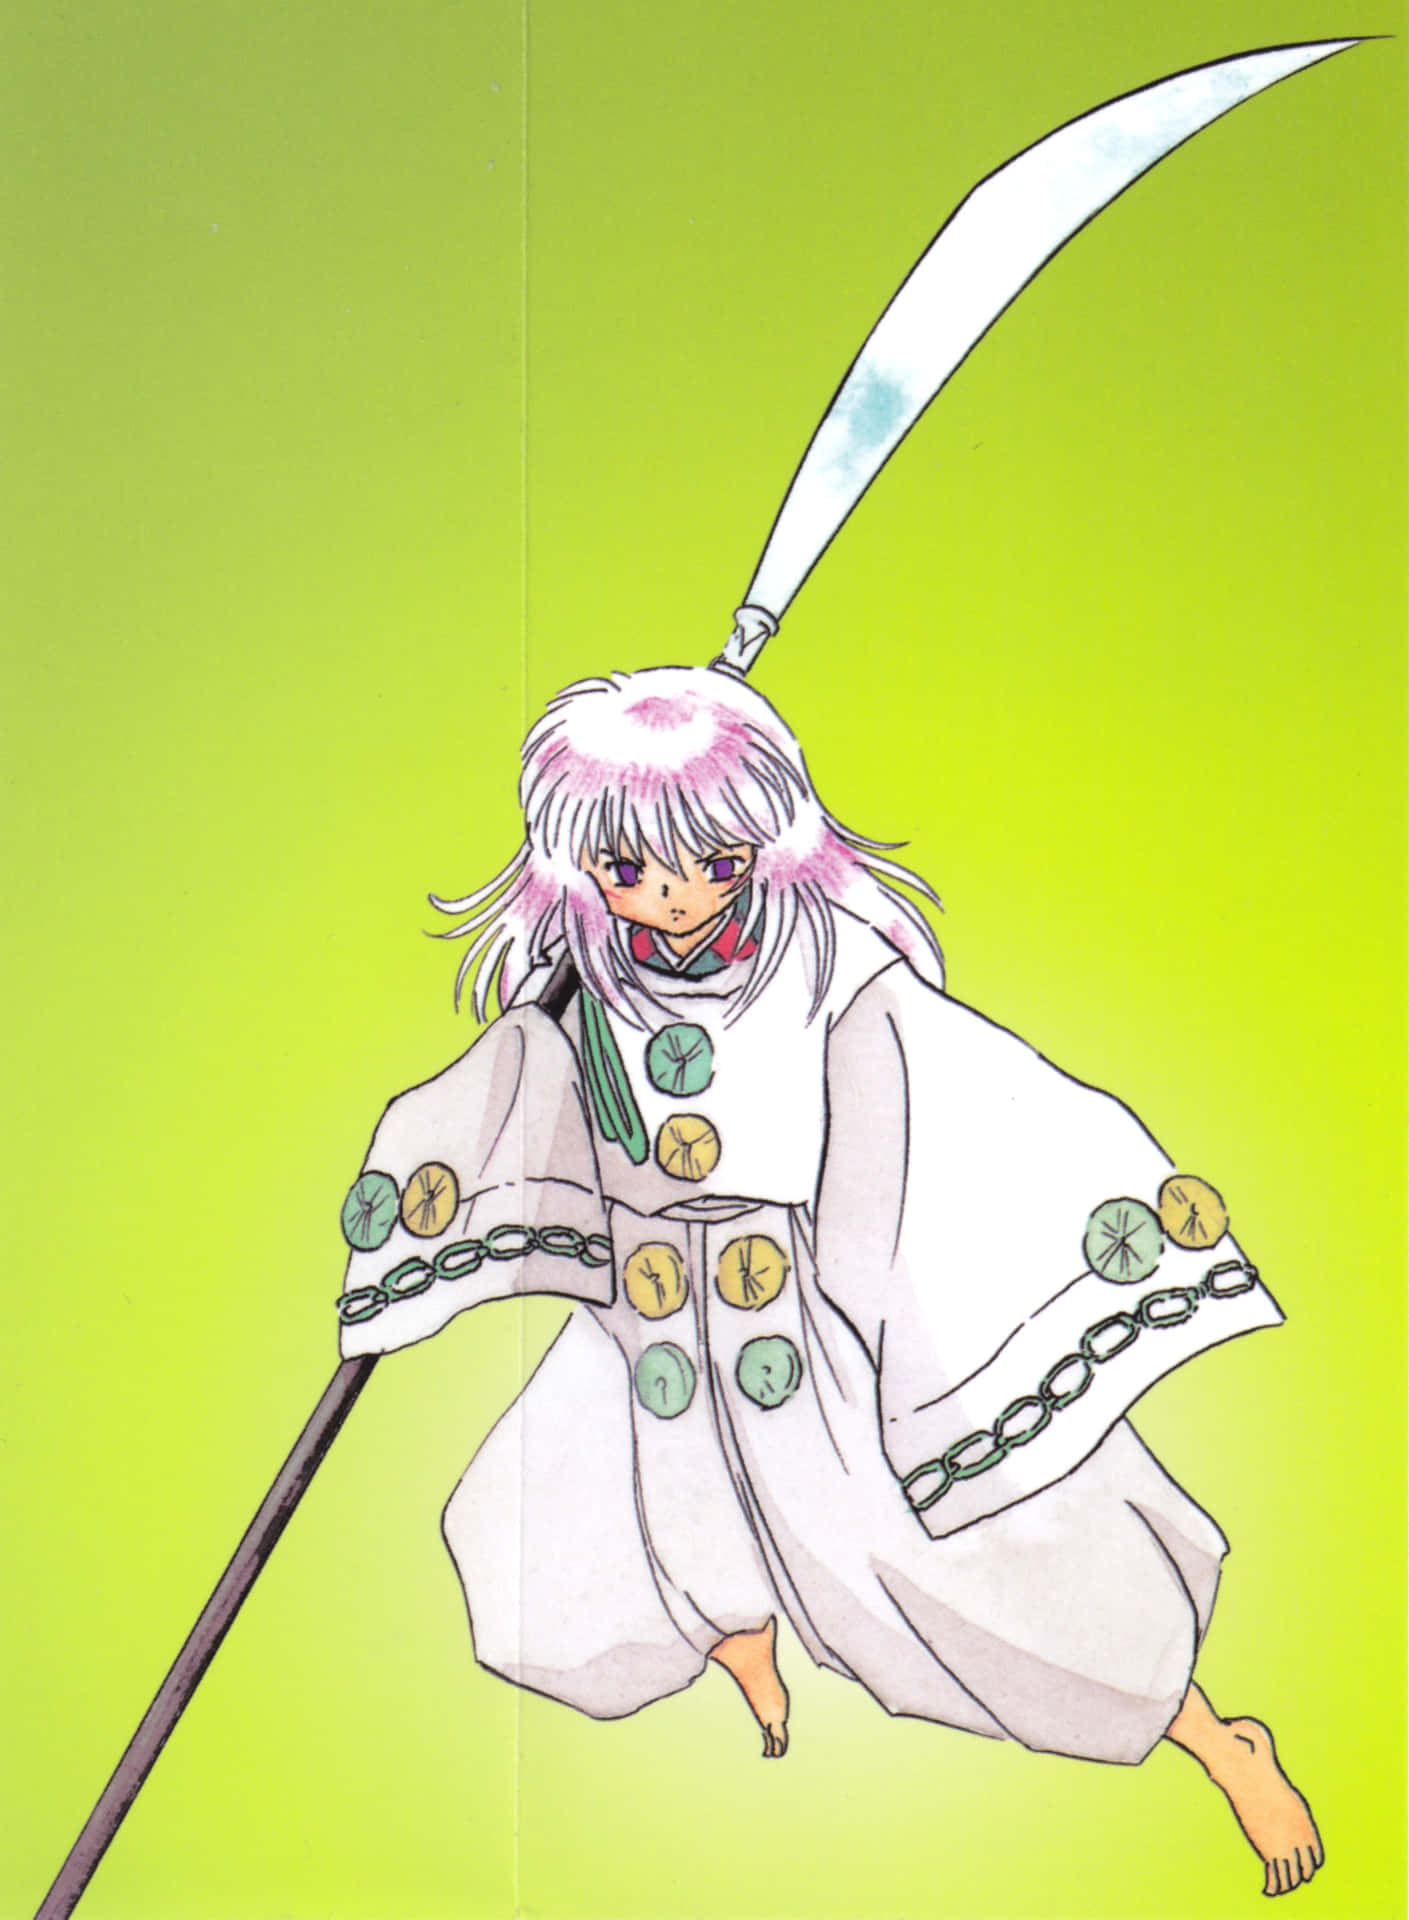 Hakudoshi in a fierce battle stance Wallpaper